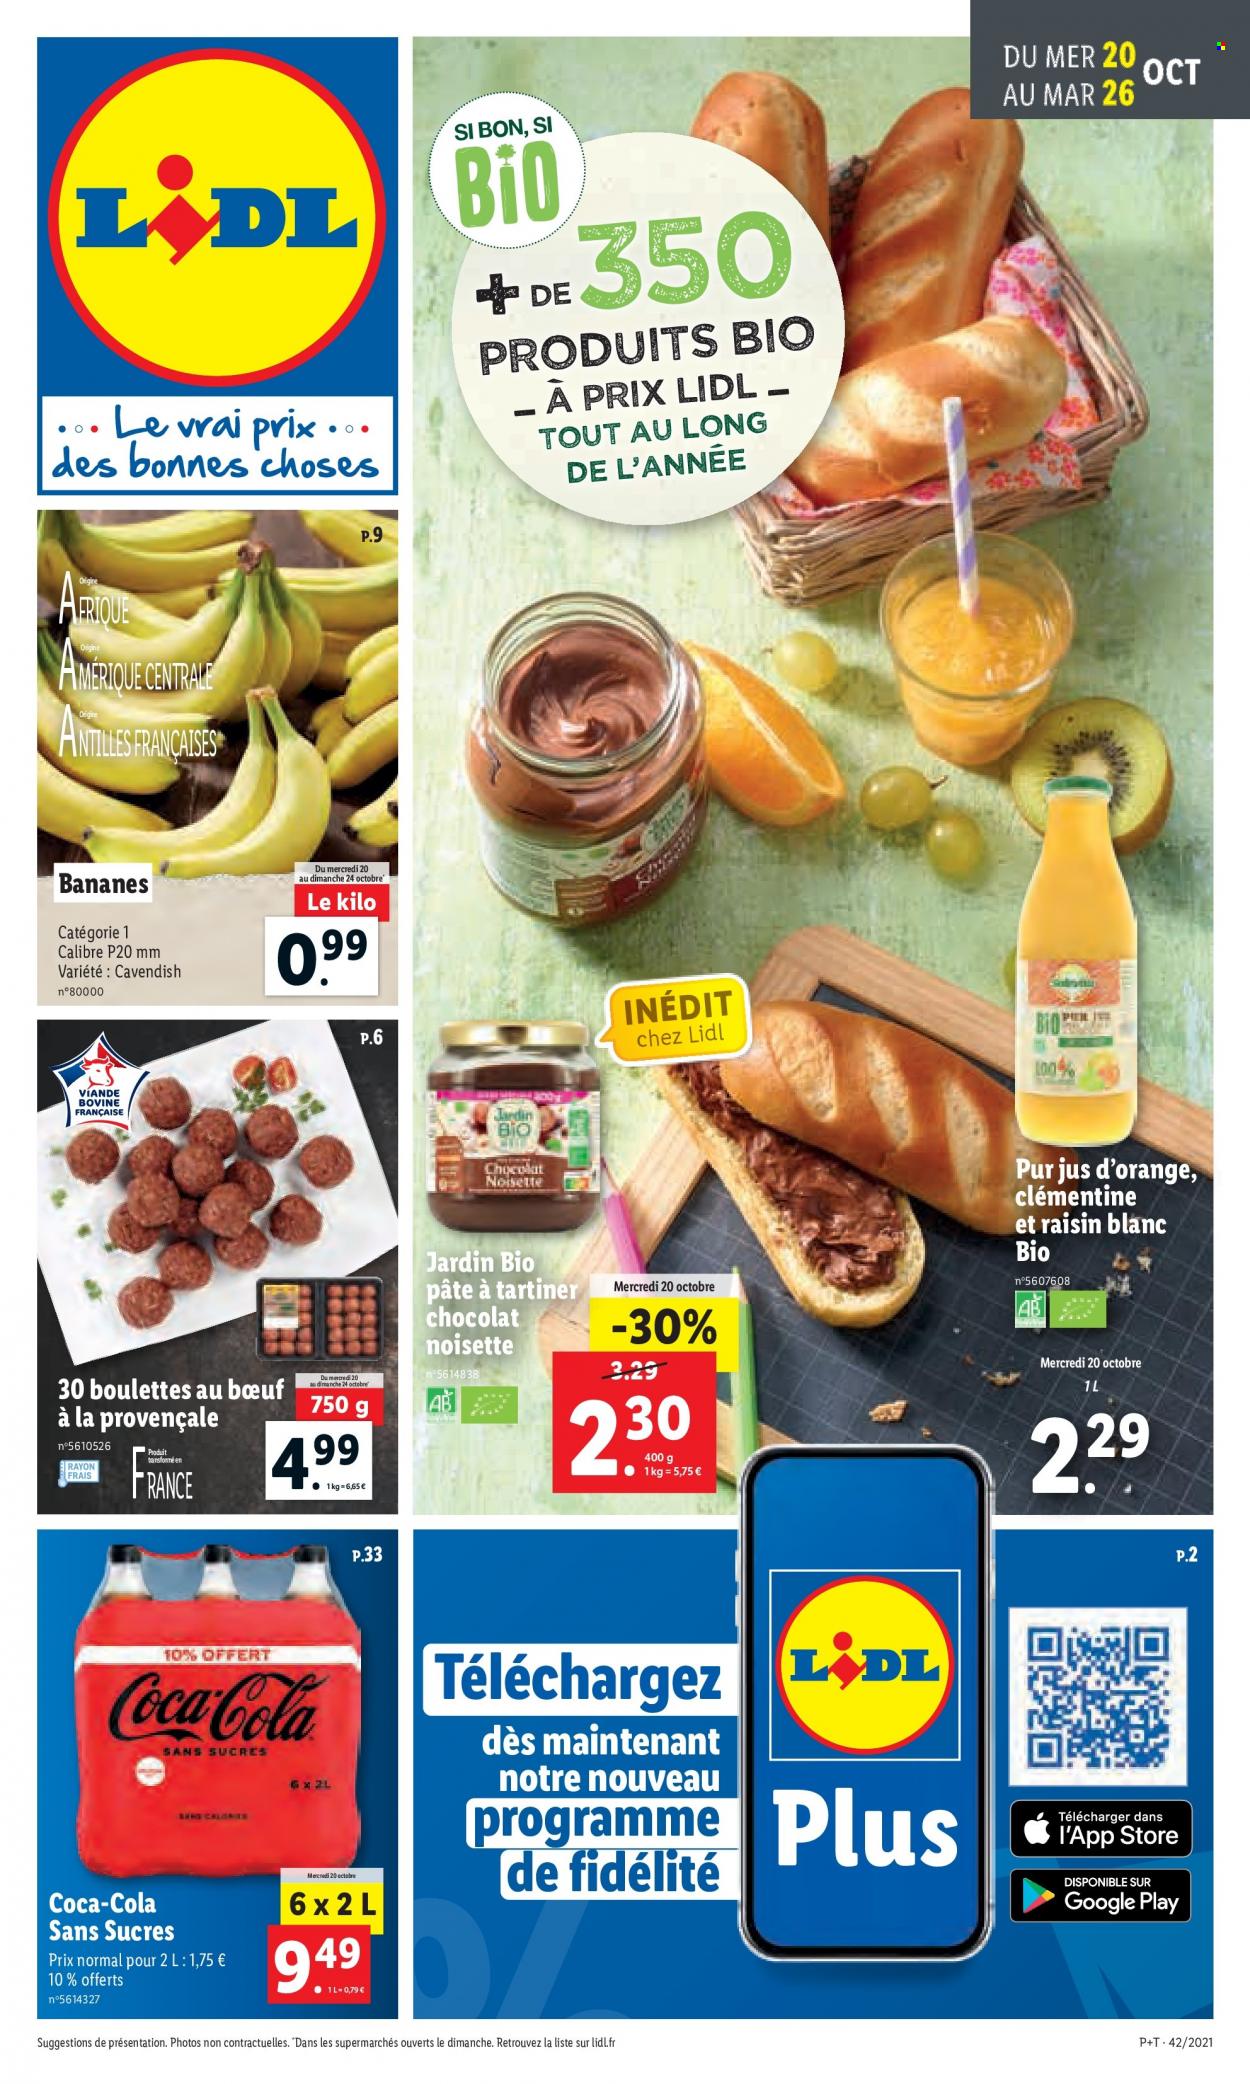 thumbnail - Catalogue Lidl - 20/10/2021 - 26/10/2021 - Produits soldés - bananes, boulettes de bœuf, Jardin BIO, pâte à tartiner, chocolat, jus, raisins, Coca-Cola, jus d'orange, pur jus. Page 1.